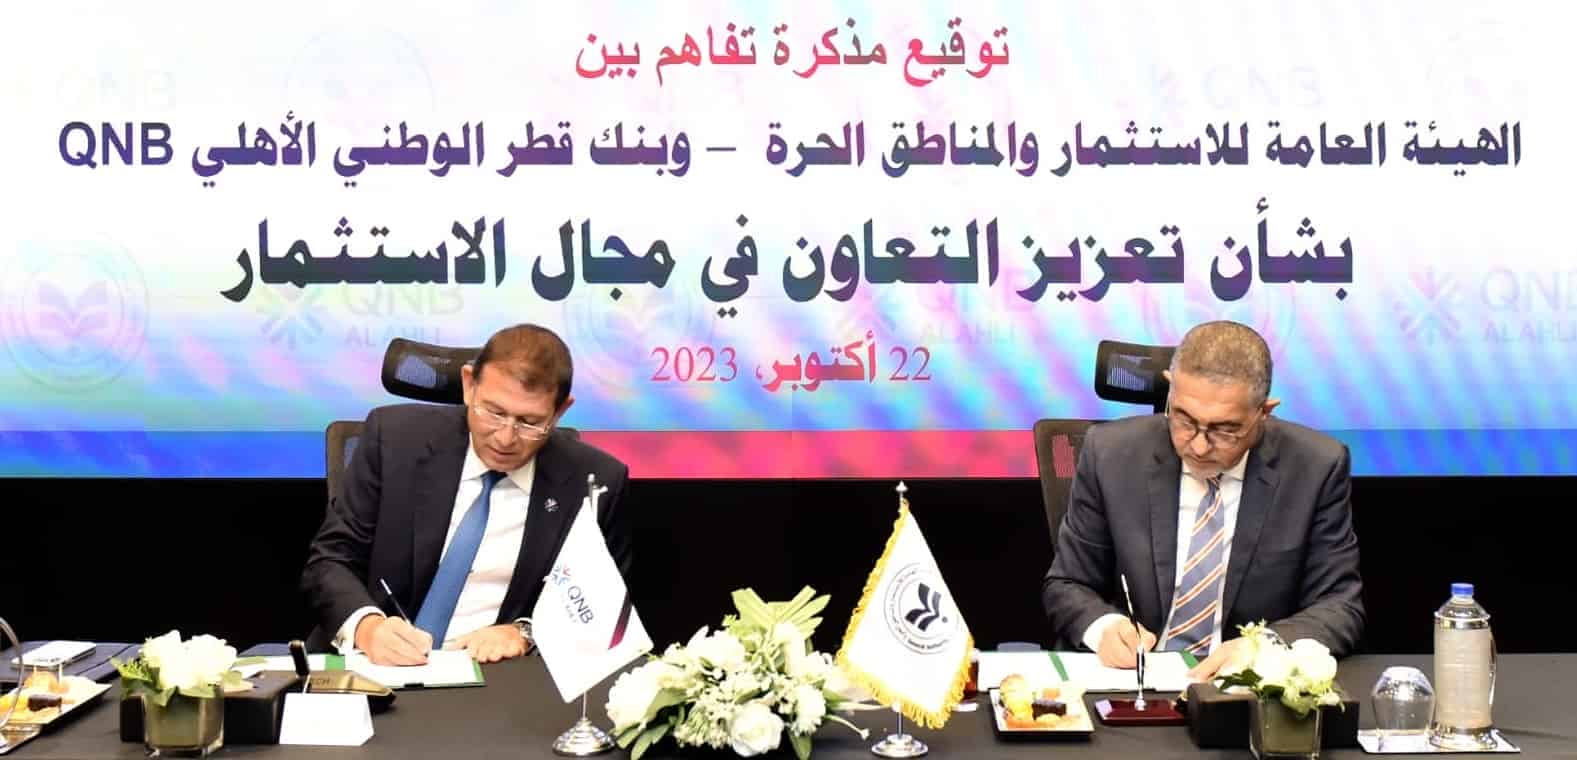 تعاون بين هيئة الاستثمار وبنك قطر الوطني للترويج للاستثمار في مصر